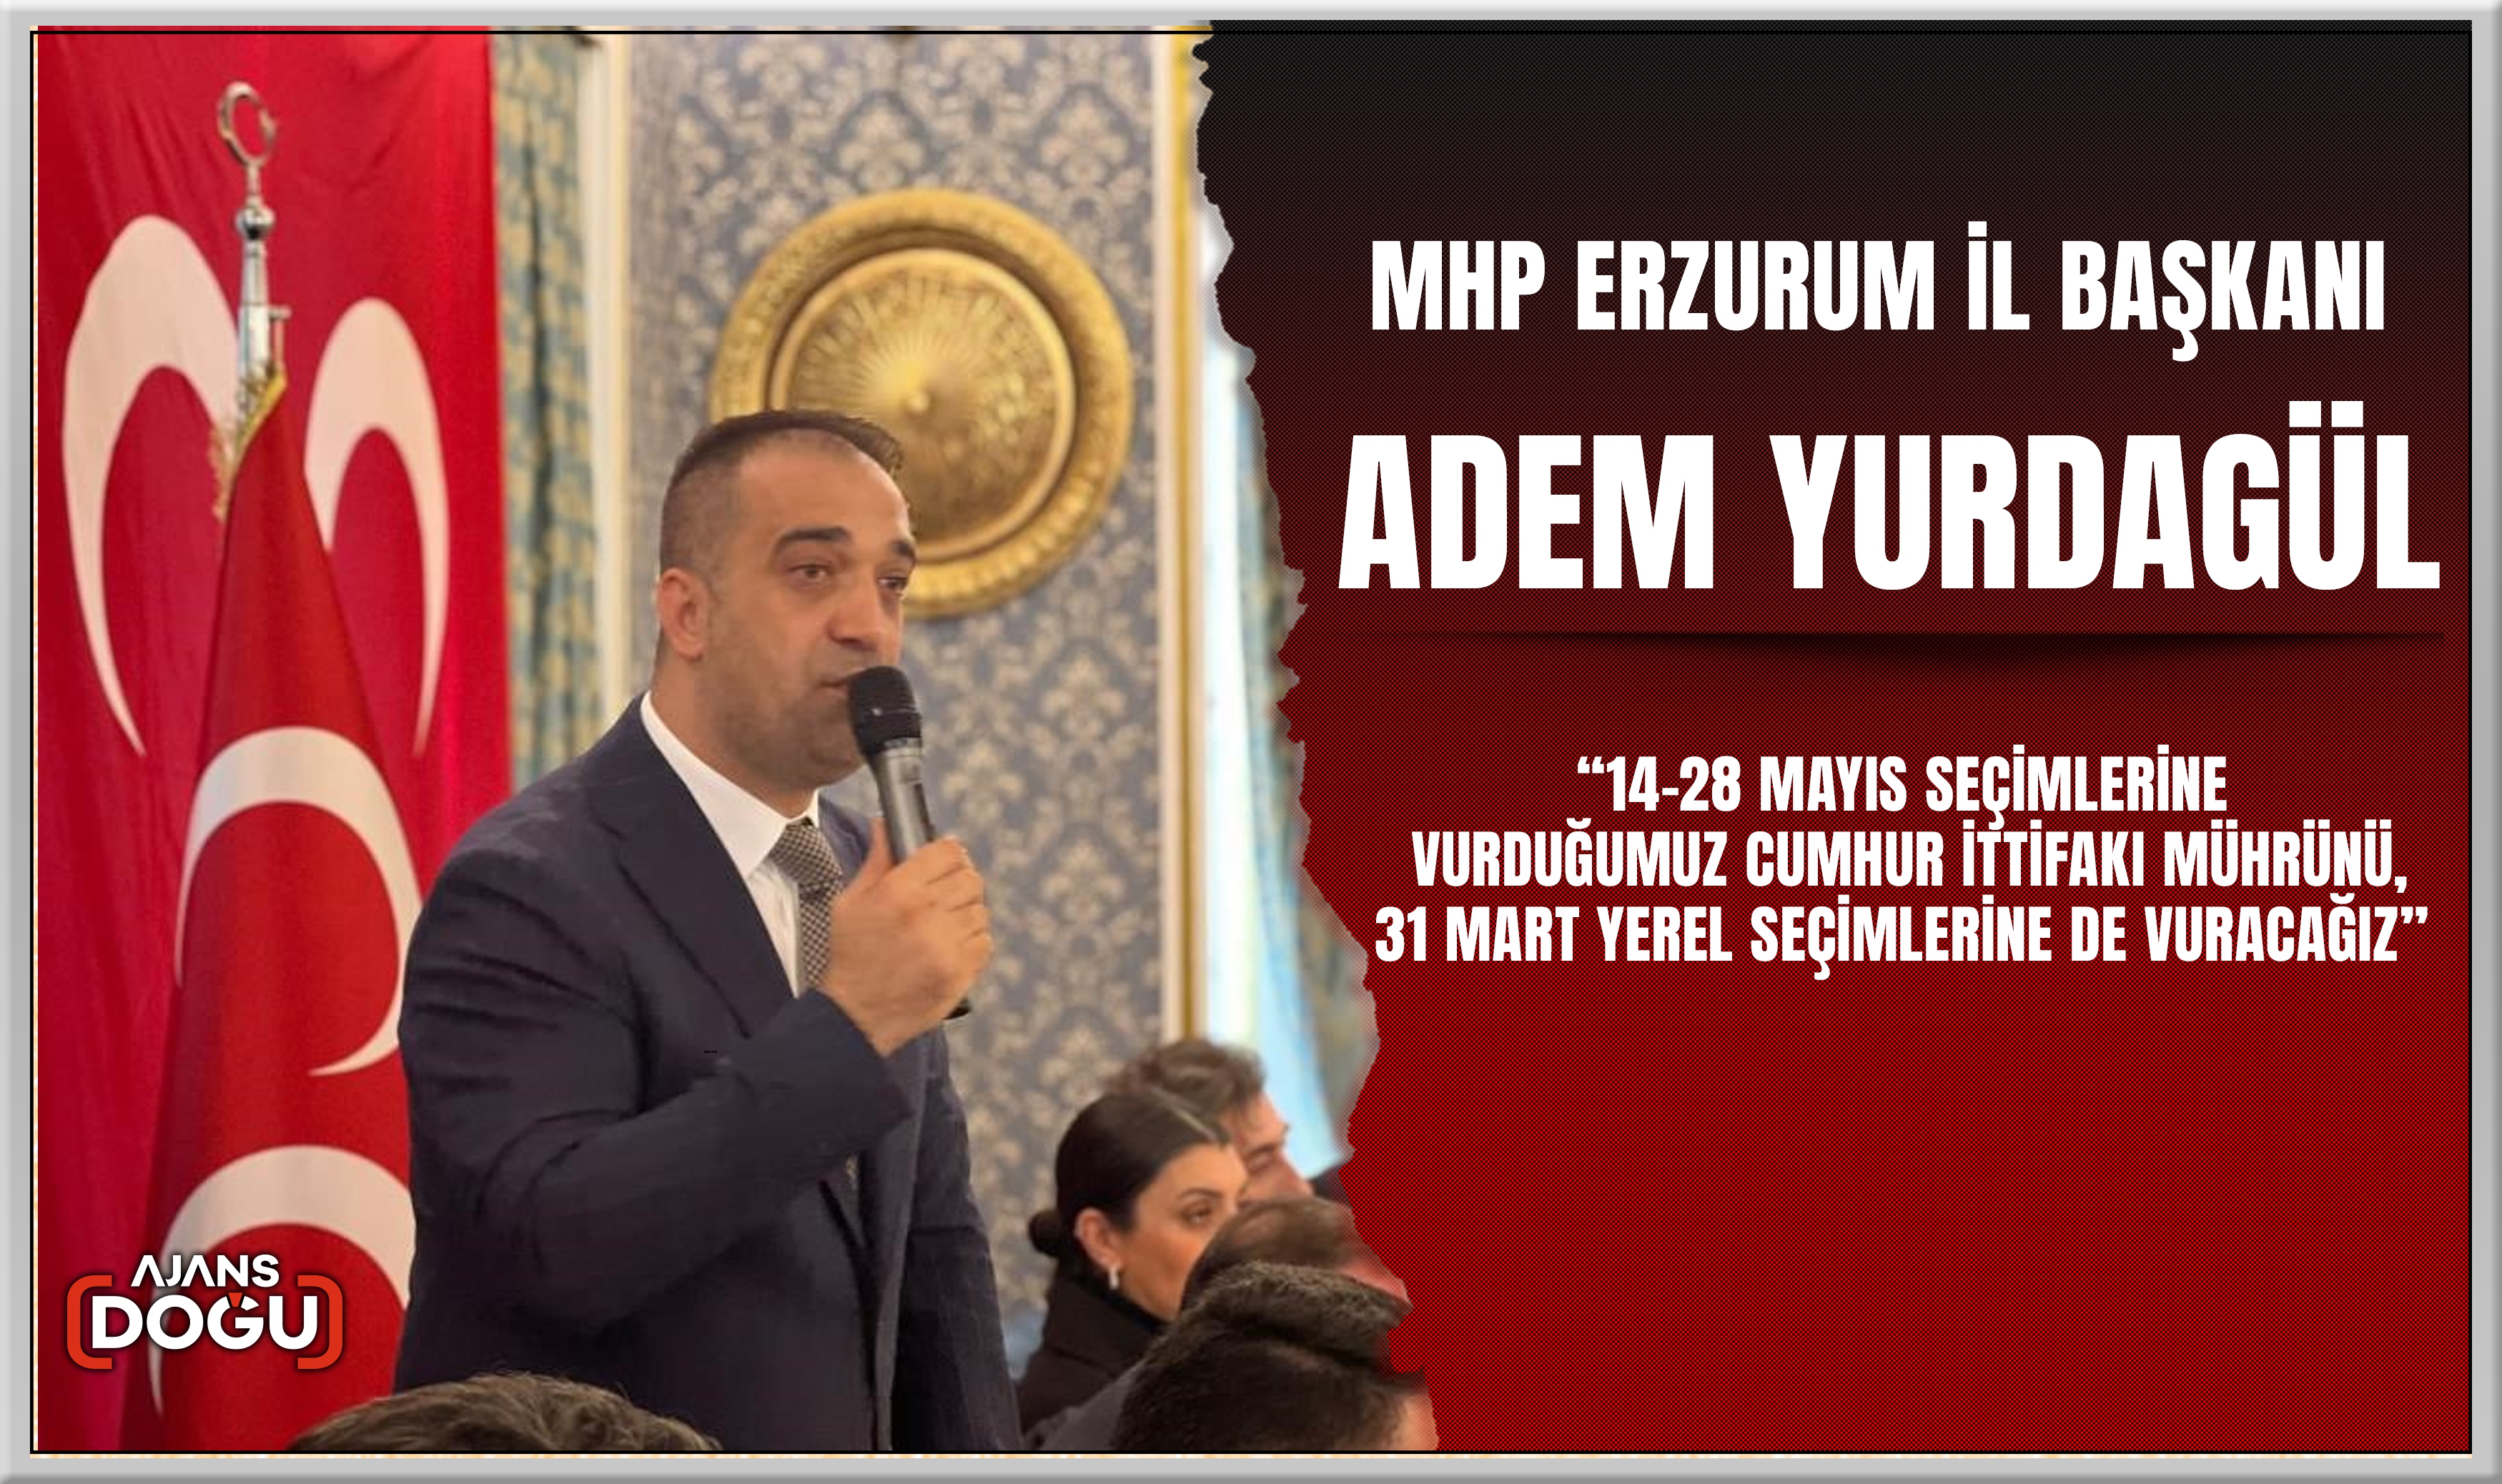 MHP Erzurum İl Başkanı Adem Yurdagül; İttifak mührünü vuracağız